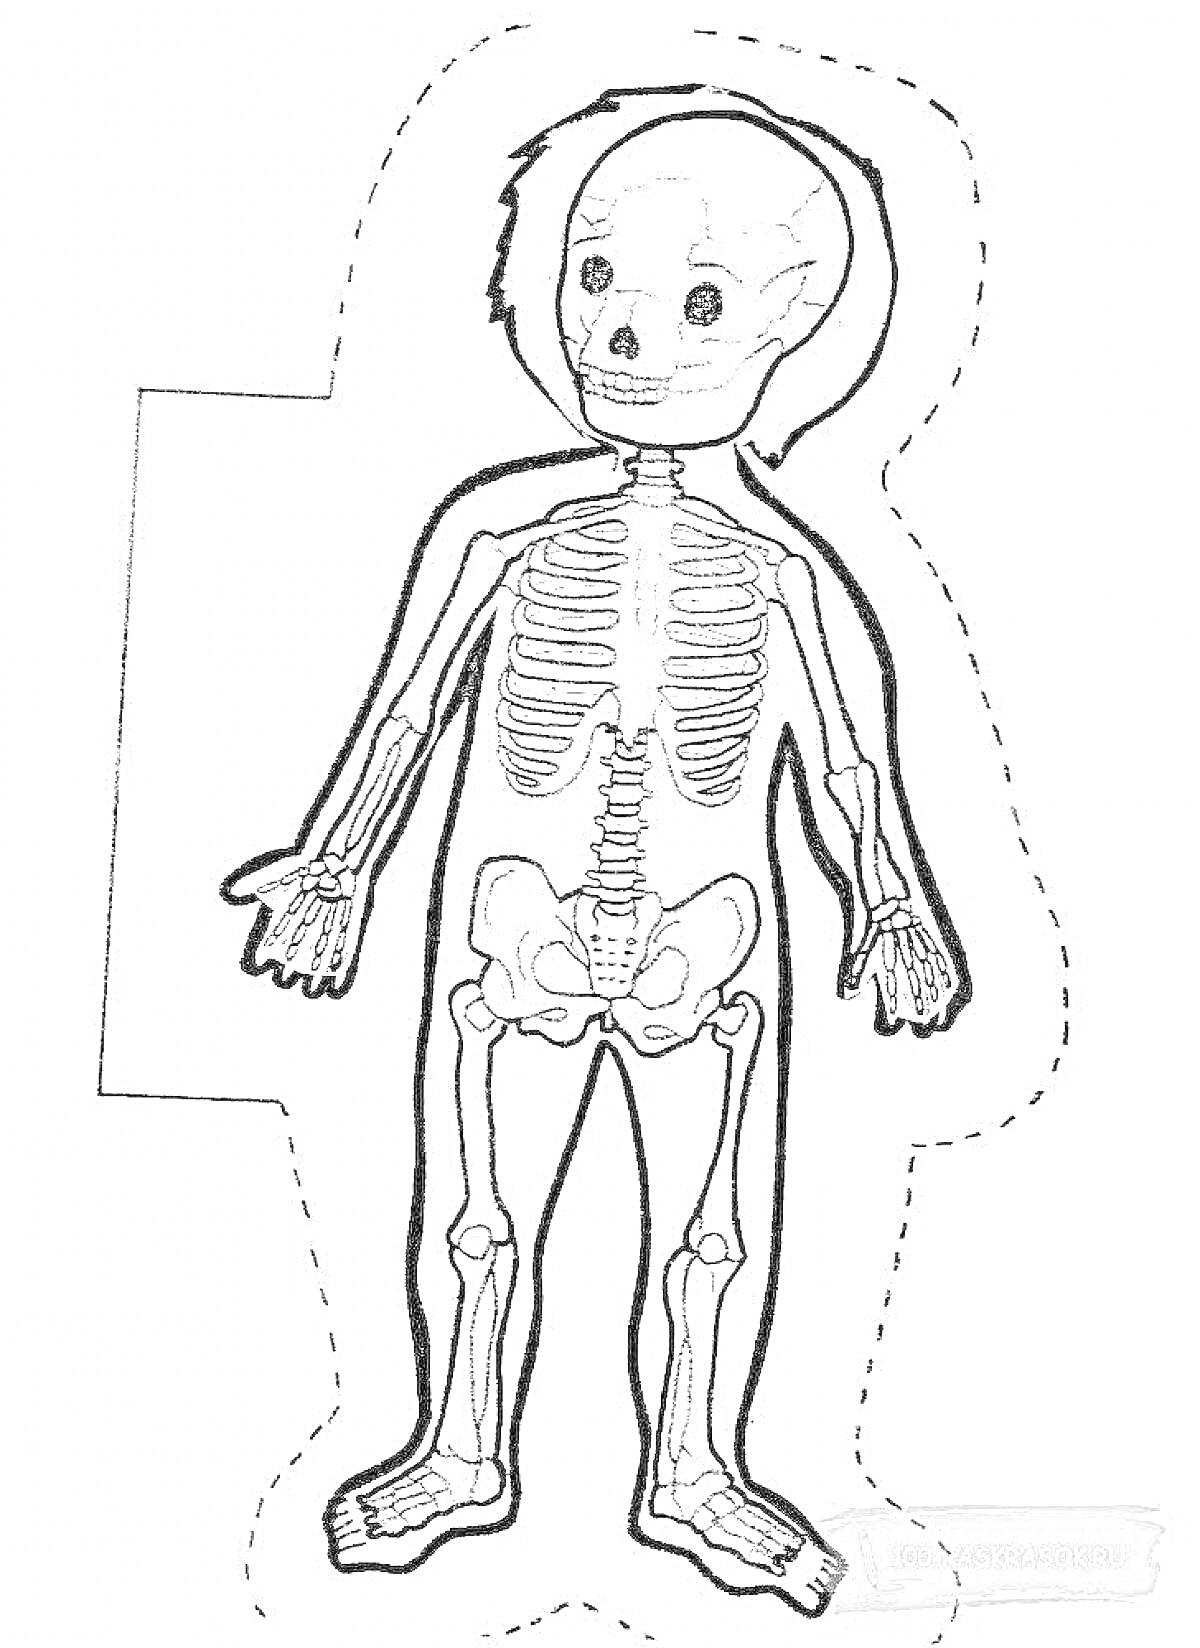 Раскраска Раскраска скелета человека, включающая череп, грудную клетку, позвоночник, таз, кости рук и ног